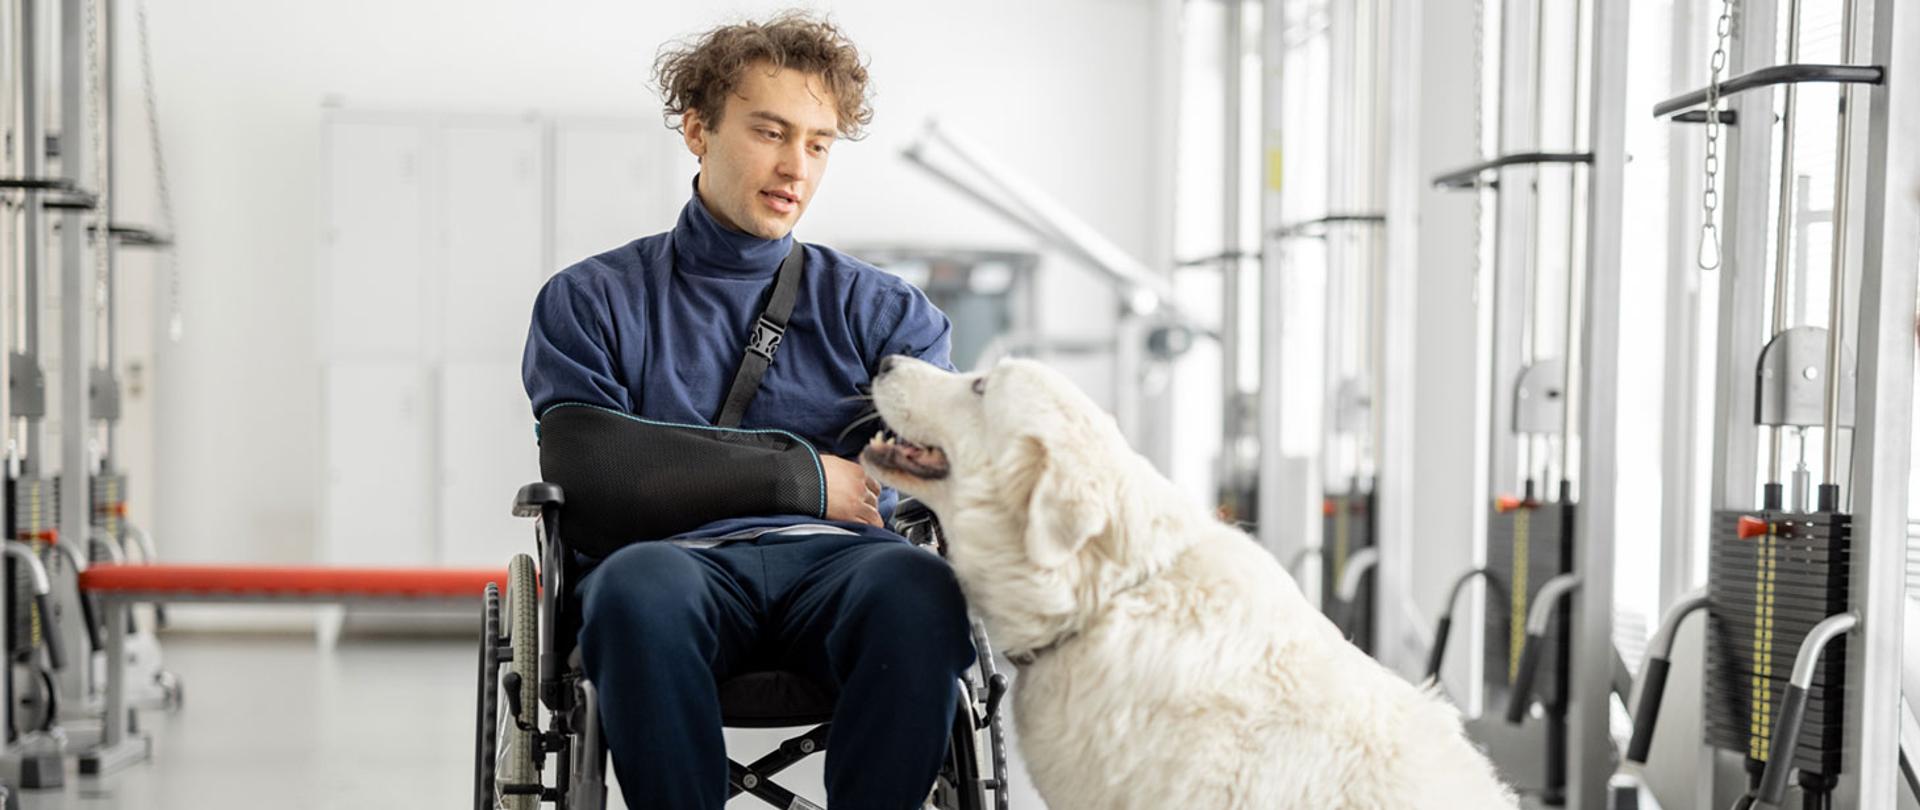 Zdjęcie przedstawia mężczyznę na wózku inwalidzkim z psem